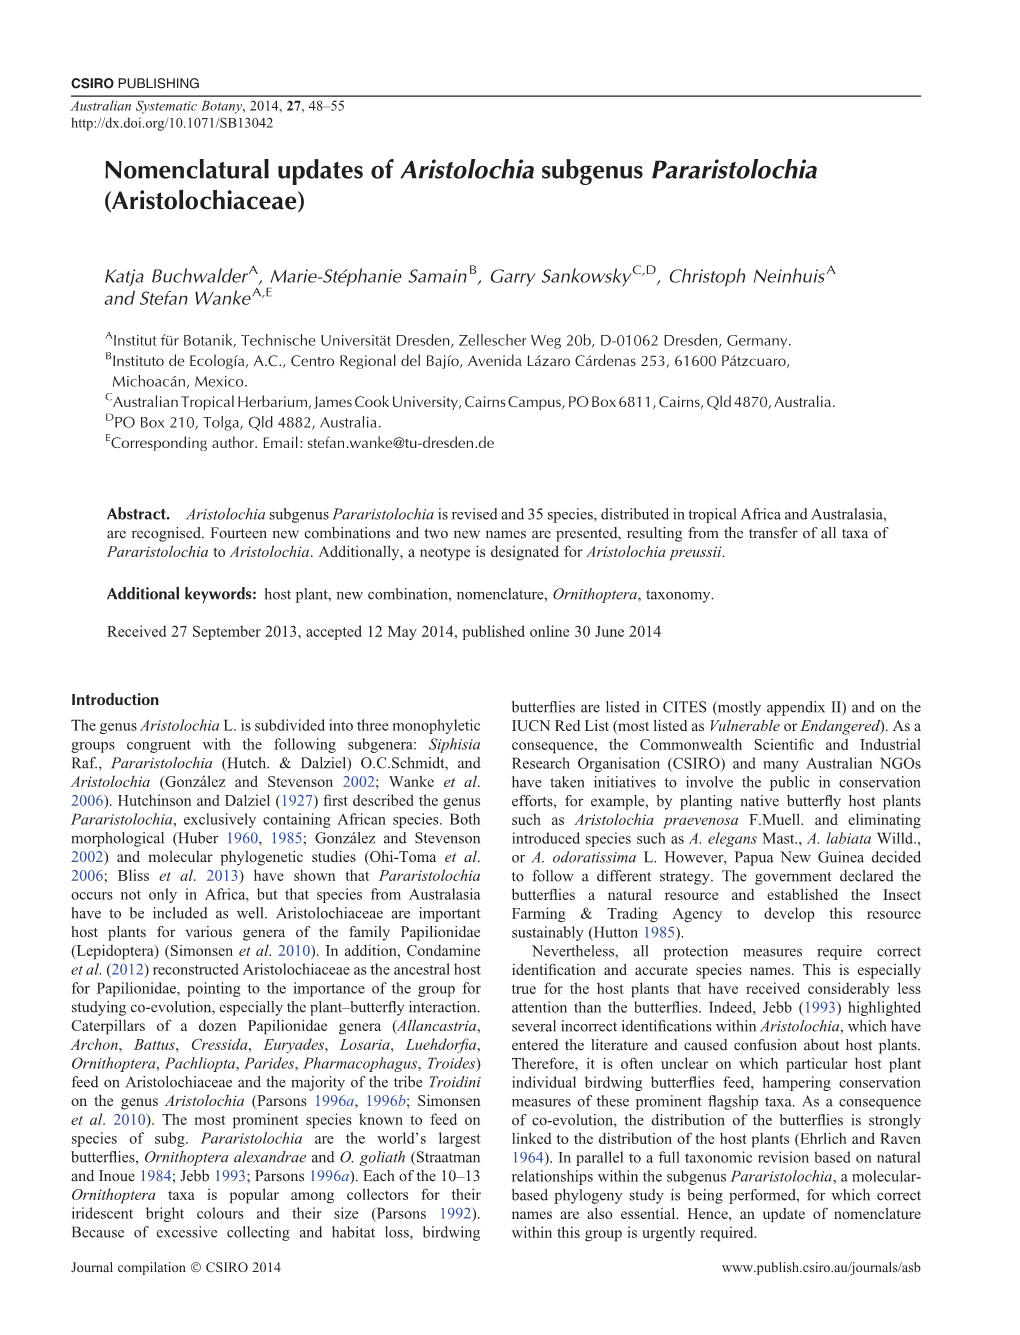 Nomenclatural Updates of Aristolochia Subgenus Pararistolochia (Aristolochiaceae)